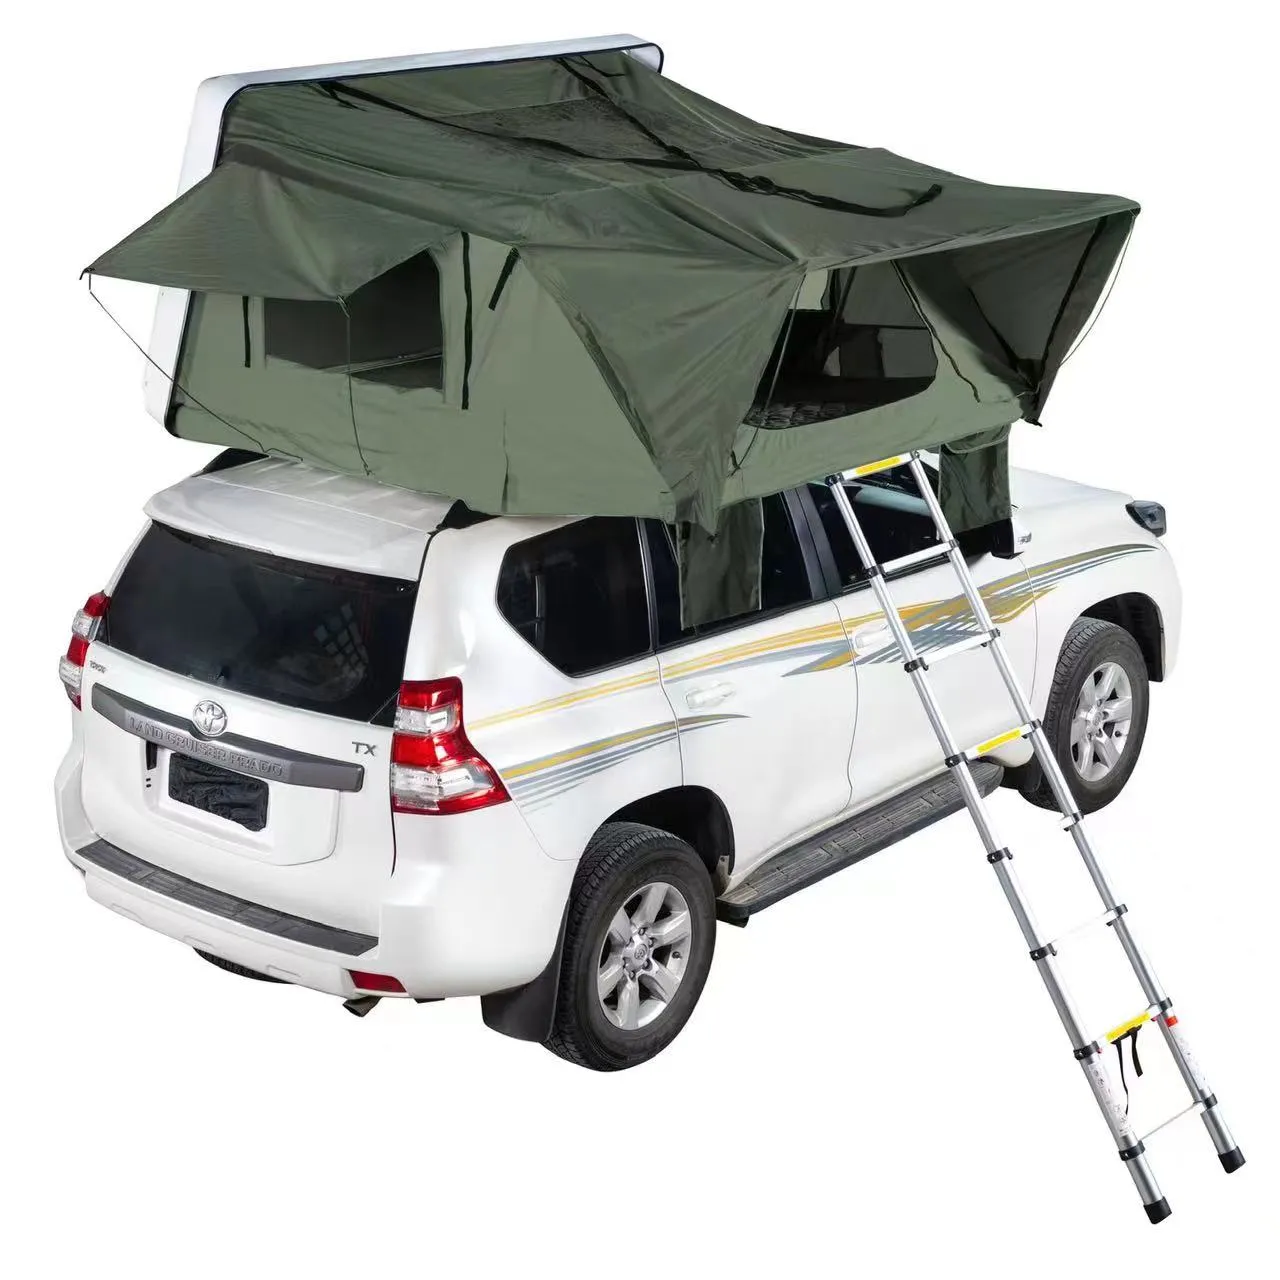 Accessori fuori strada tenda tetto tetto auto tenda tenda auto 4 persona